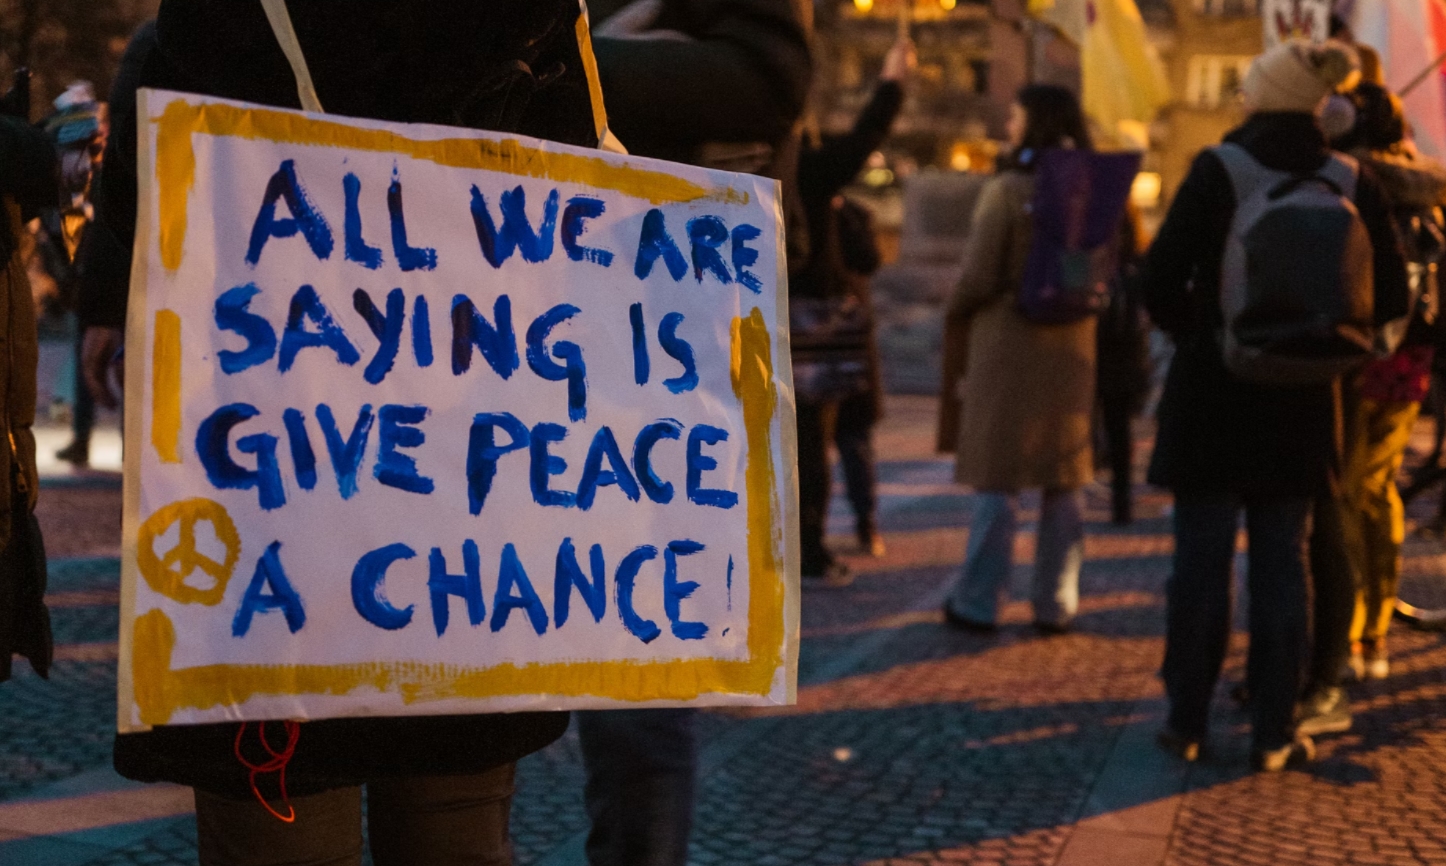 “Todo lo que pedimos es que le den una oportunidad a la paz”, dice un rótulo en esta manifestación realizada el 1° de marzo en Ljubljana, Slovenia. Foto: UNsplash / Miha Rekar